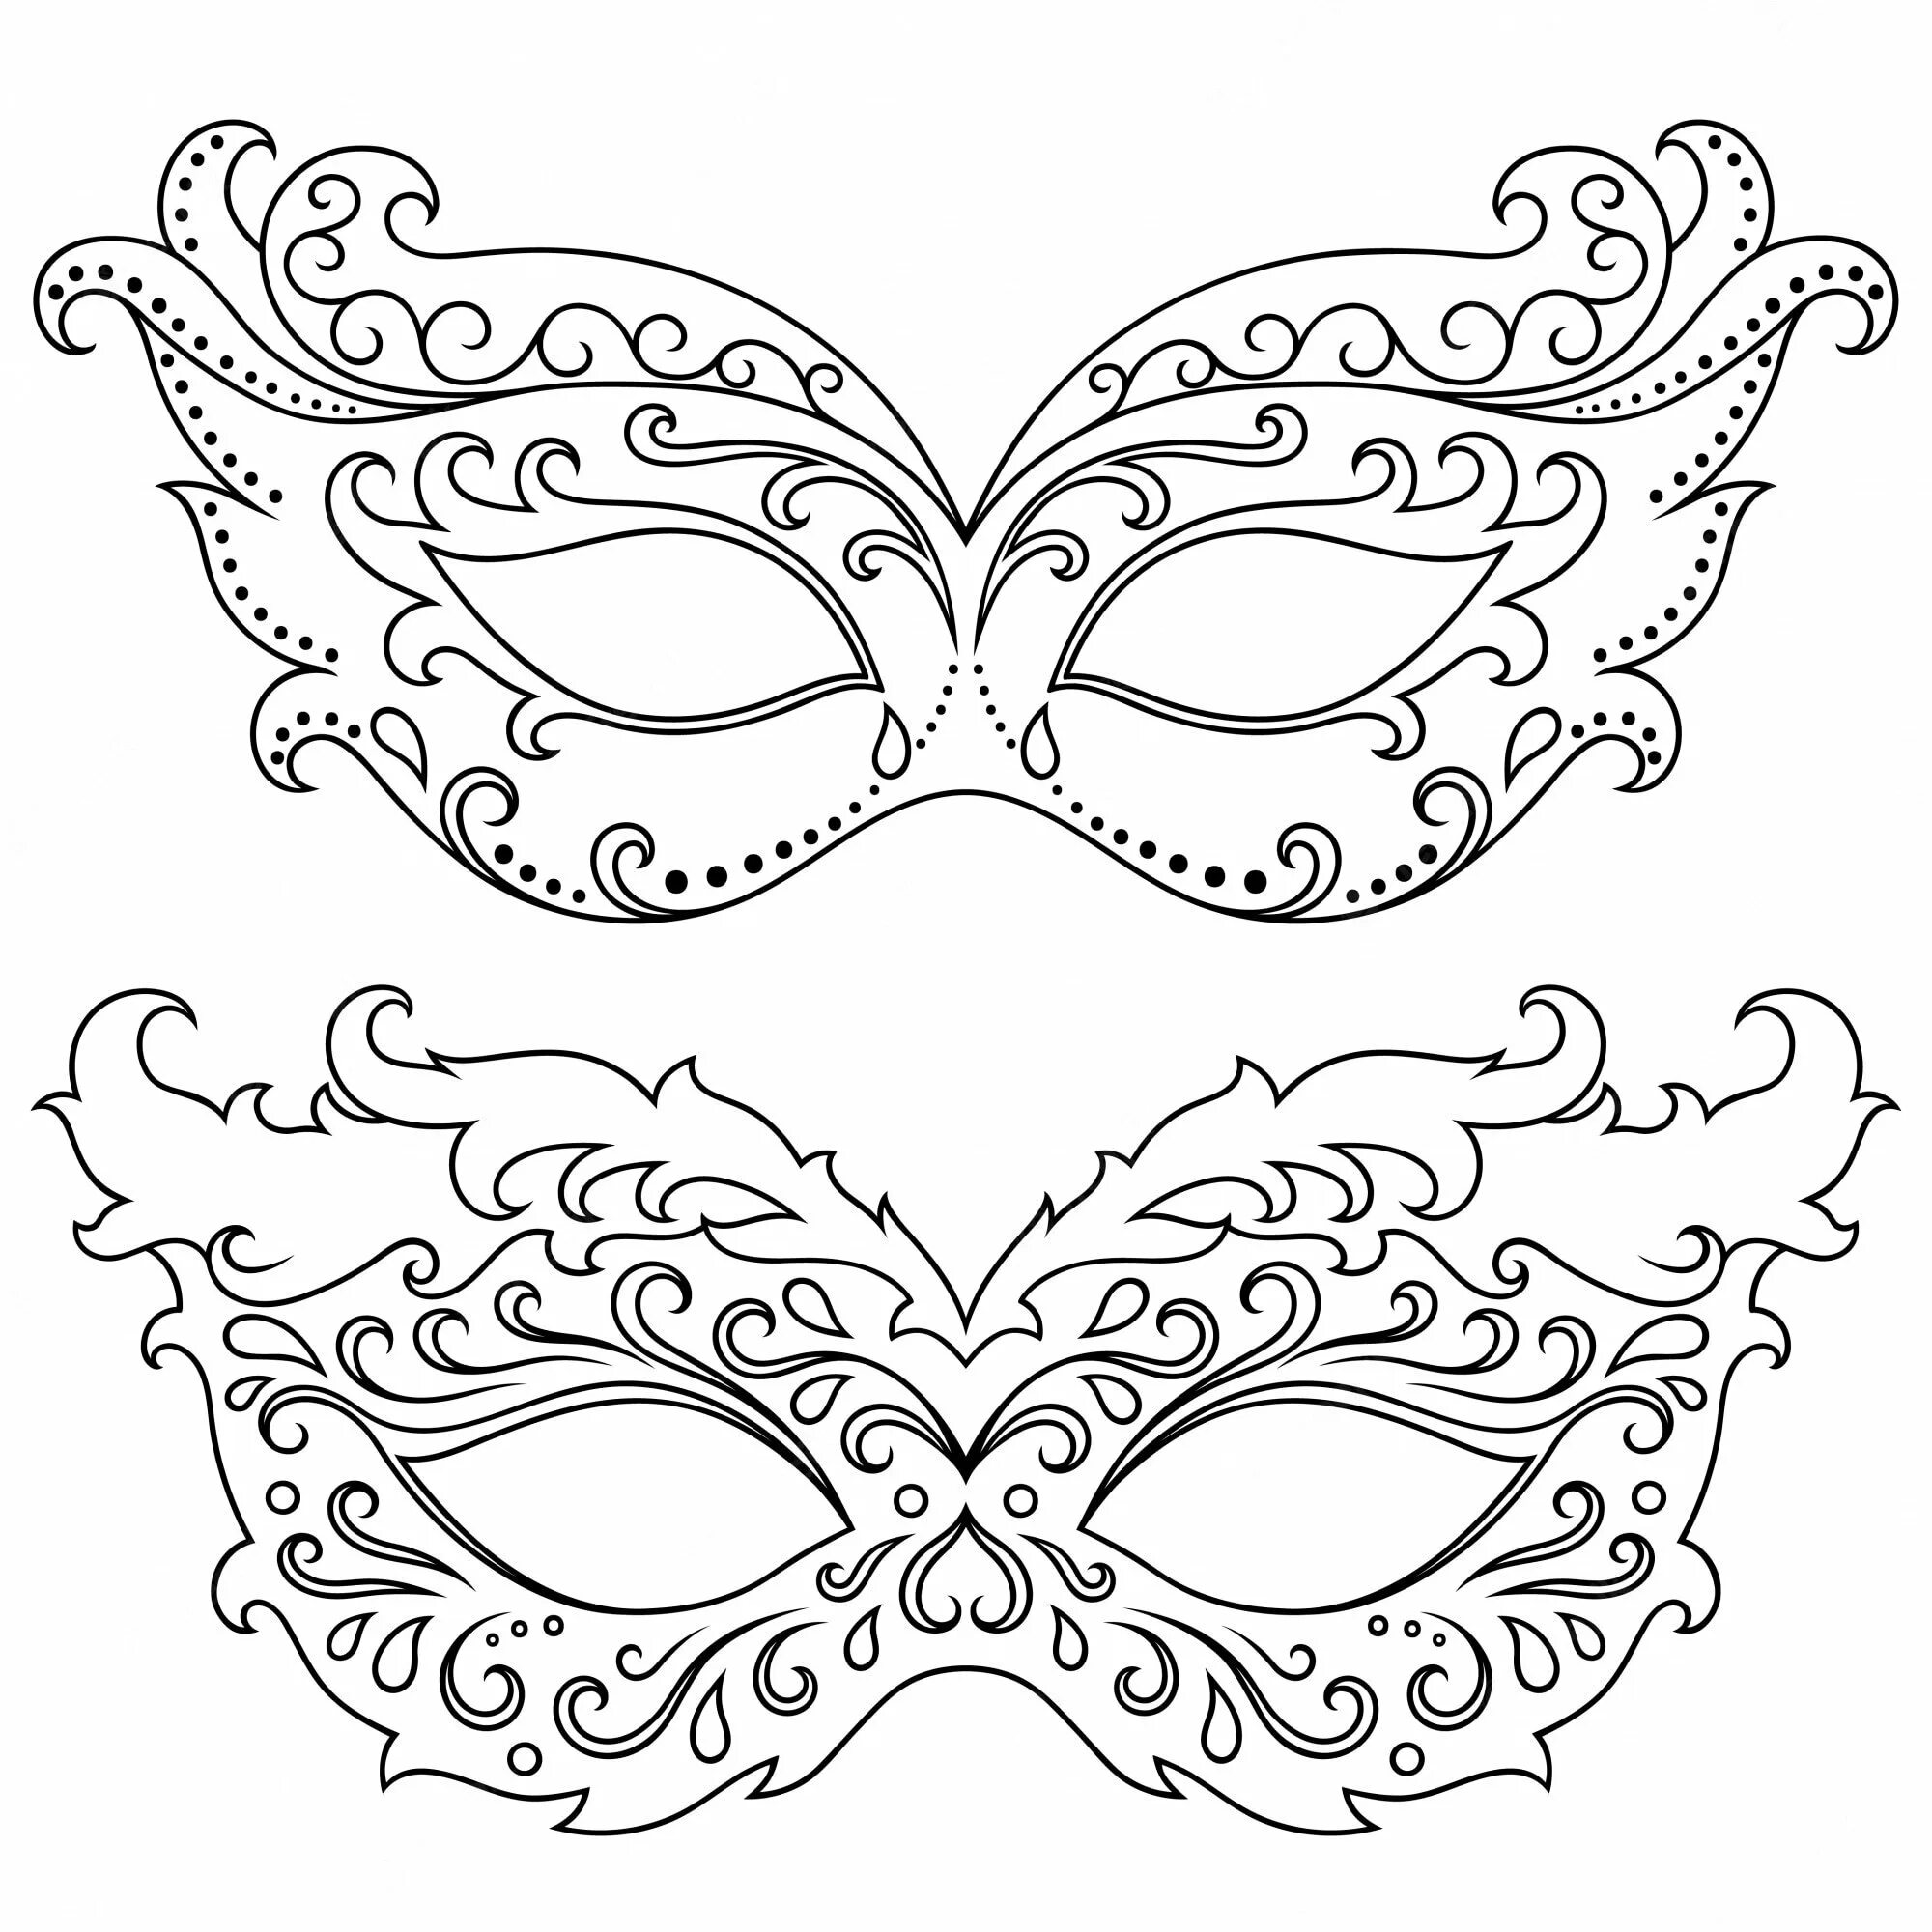 Красиво раскрасить маску. Карнавальная маска. Эскиз карнавальной маски. Трафареты карнавальных масок для лица. Макет маски карнавальной.